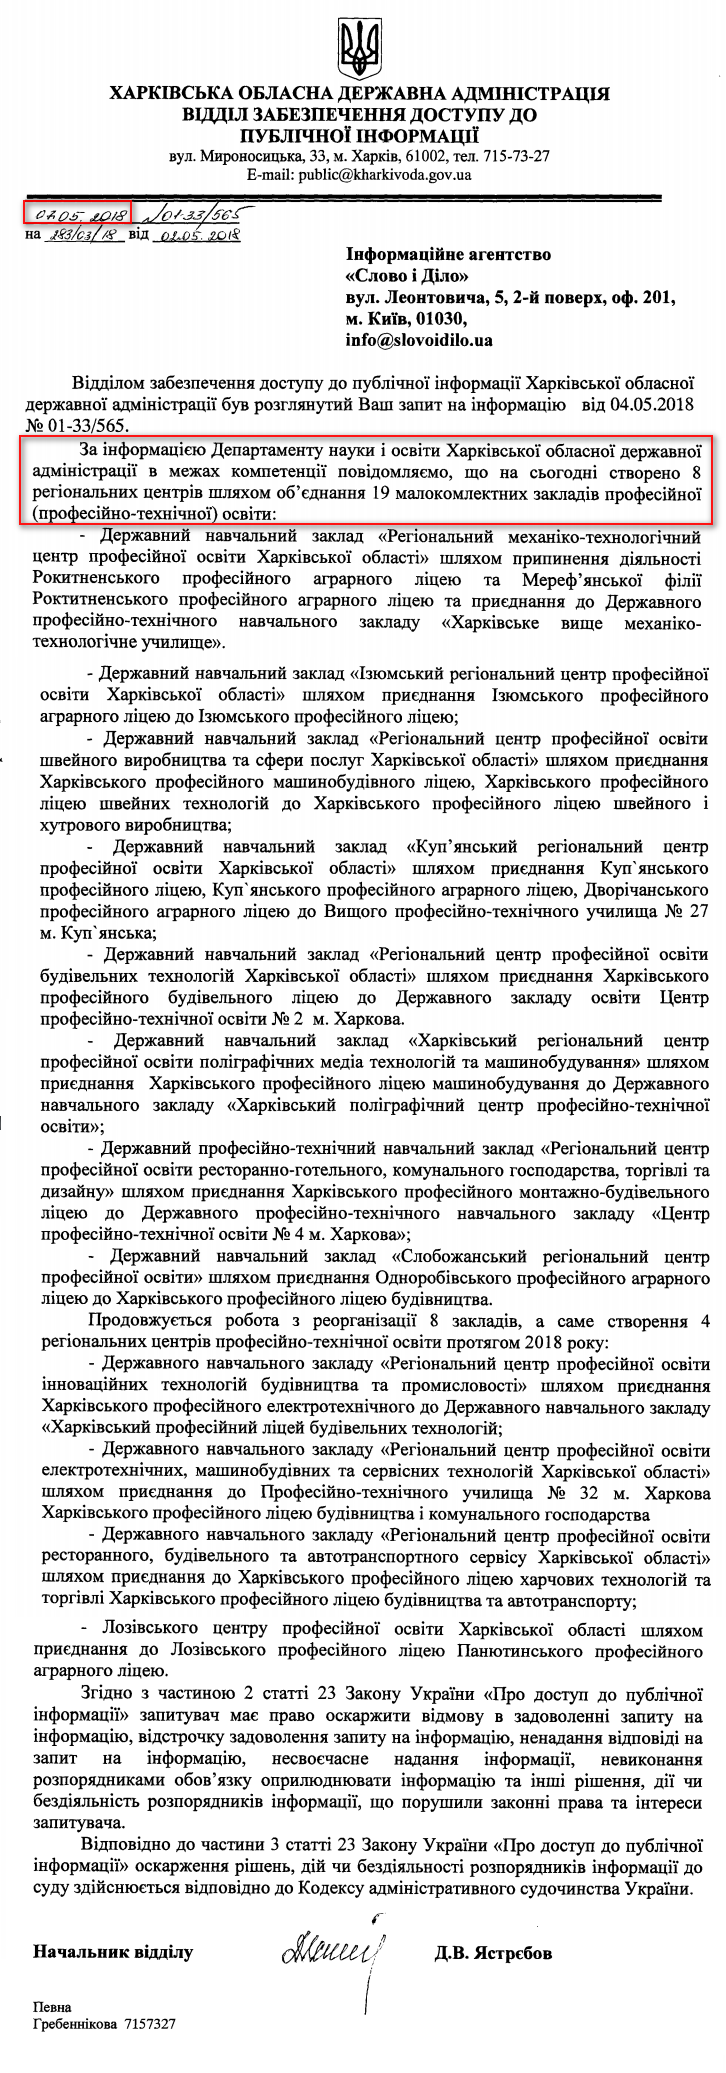 Лист Харківської обласної державної адміністрації від 28 грудня 2017 року 7 травня 2018 року